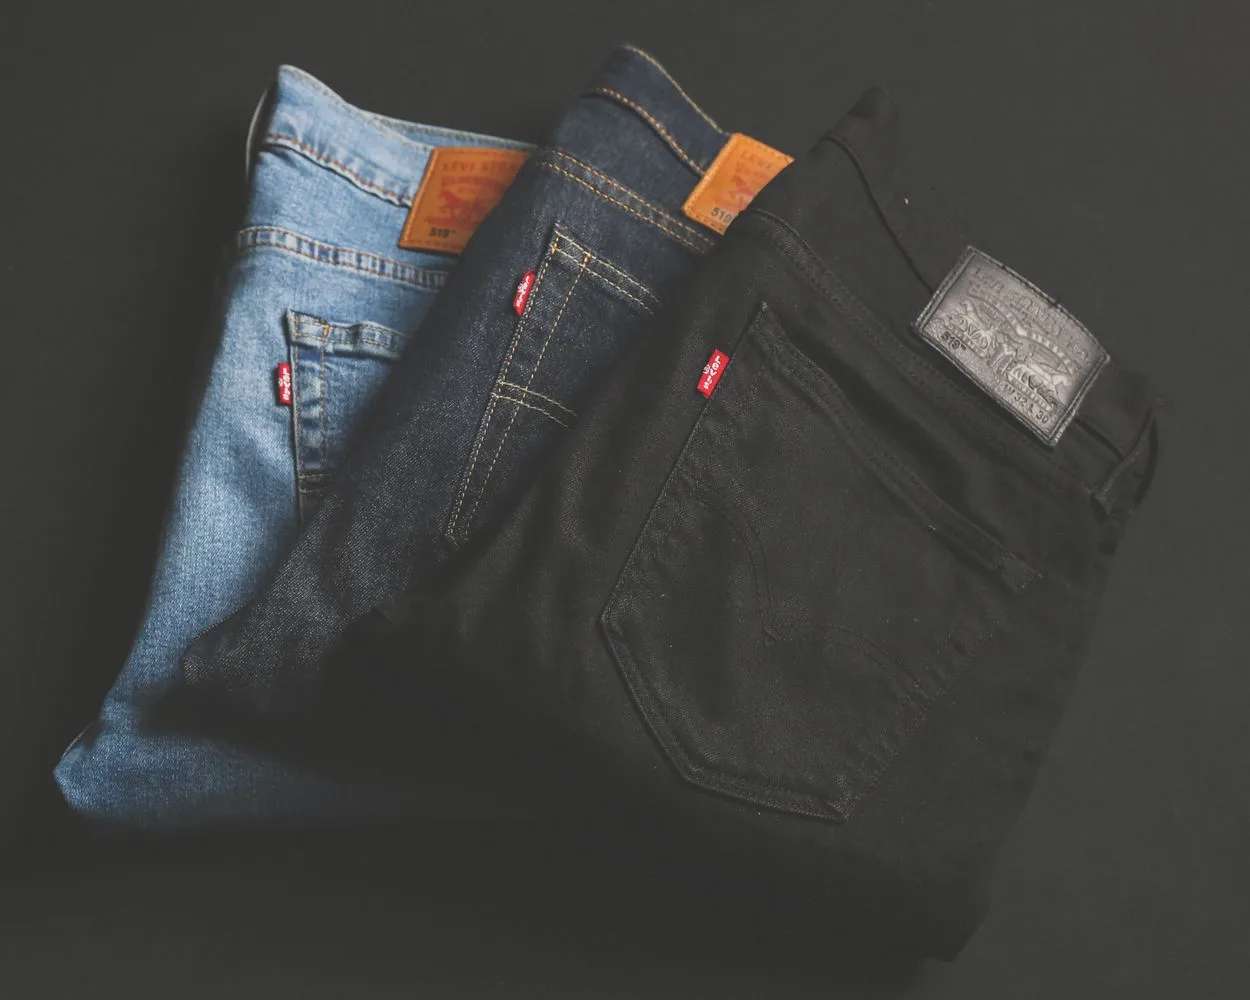  Hvad er forskellen mellem jeans med høj talje og jeans med høj talje - Alle forskelle